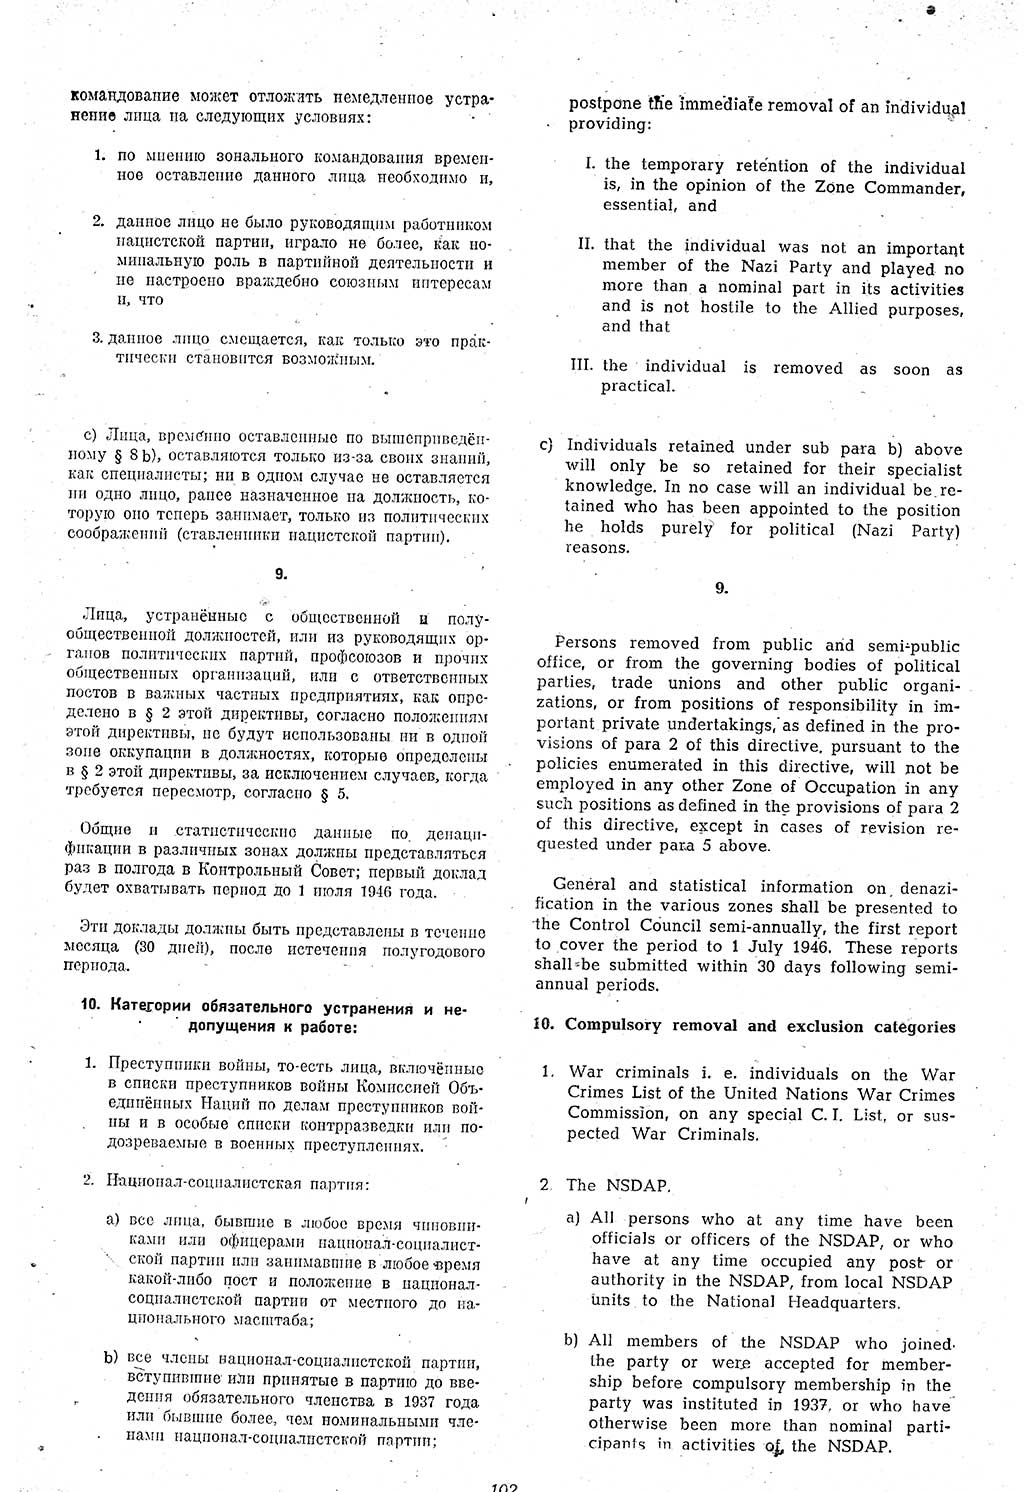 Amtsblatt des Kontrollrats (ABlKR) in Deutschland 1946, Seite 102/1 (ABlKR Dtl. 1946, S. 102/1)